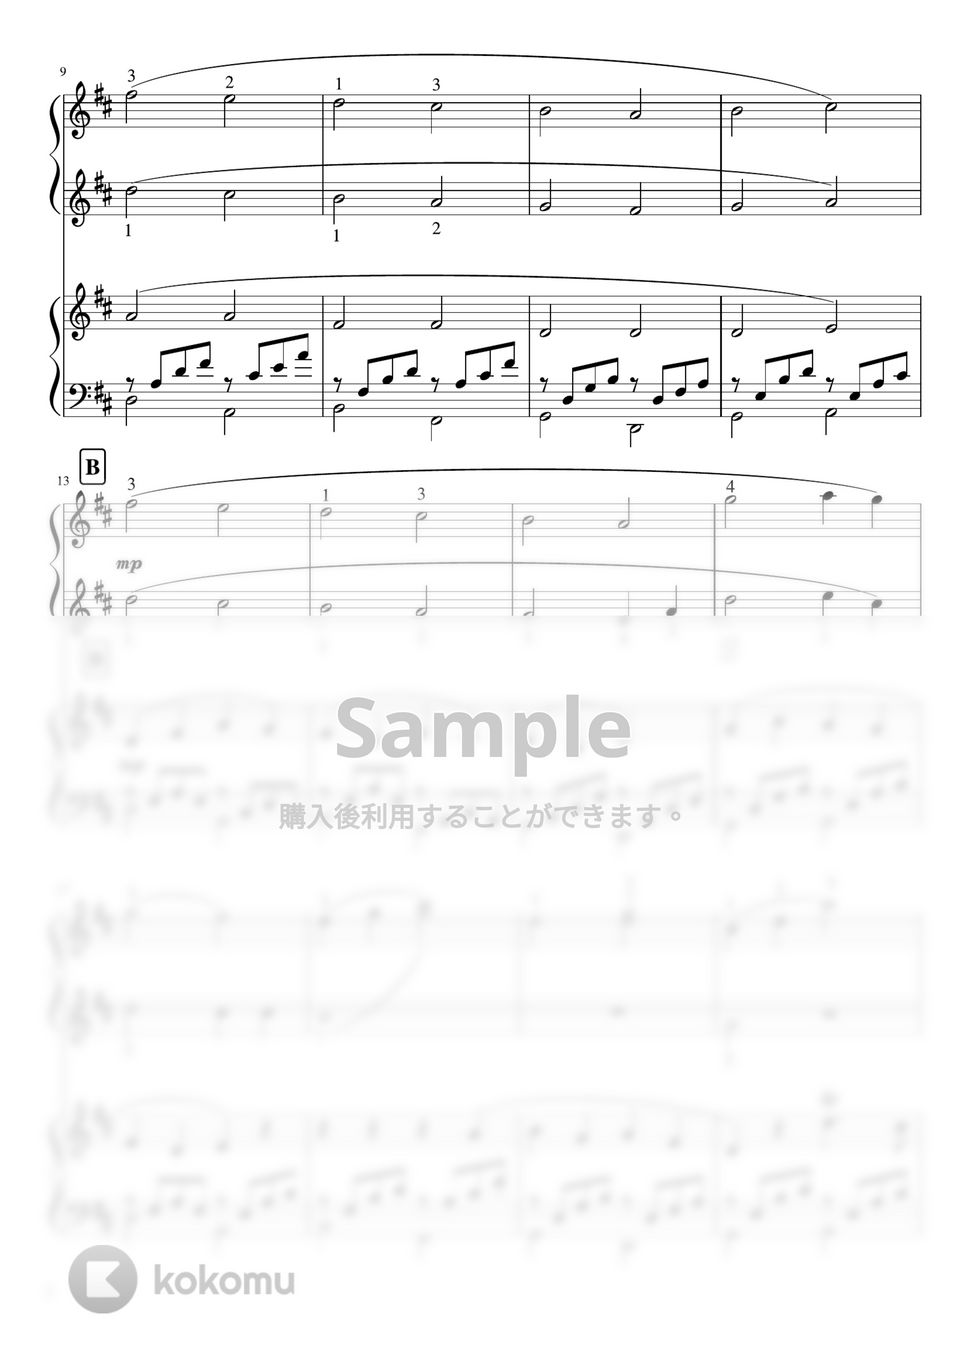 パッヘルベル - カノン (Ddur・ピアノ連弾 Second中級 Primo初級) by pfkaori